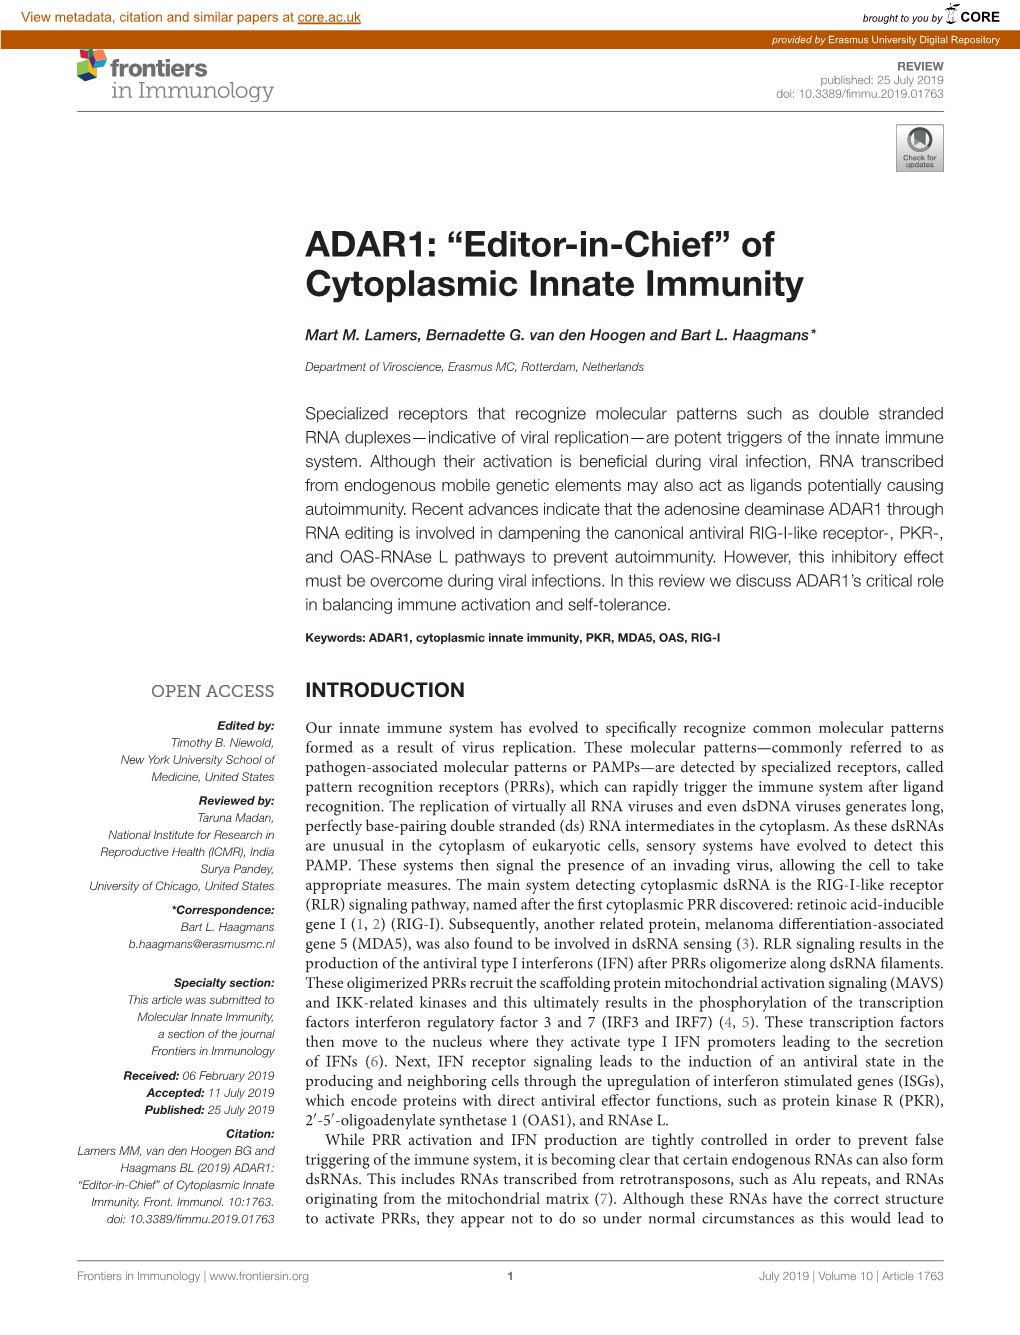 ADAR1: "Editor-In-Chief" of Cytoplasmic Innate Immunity